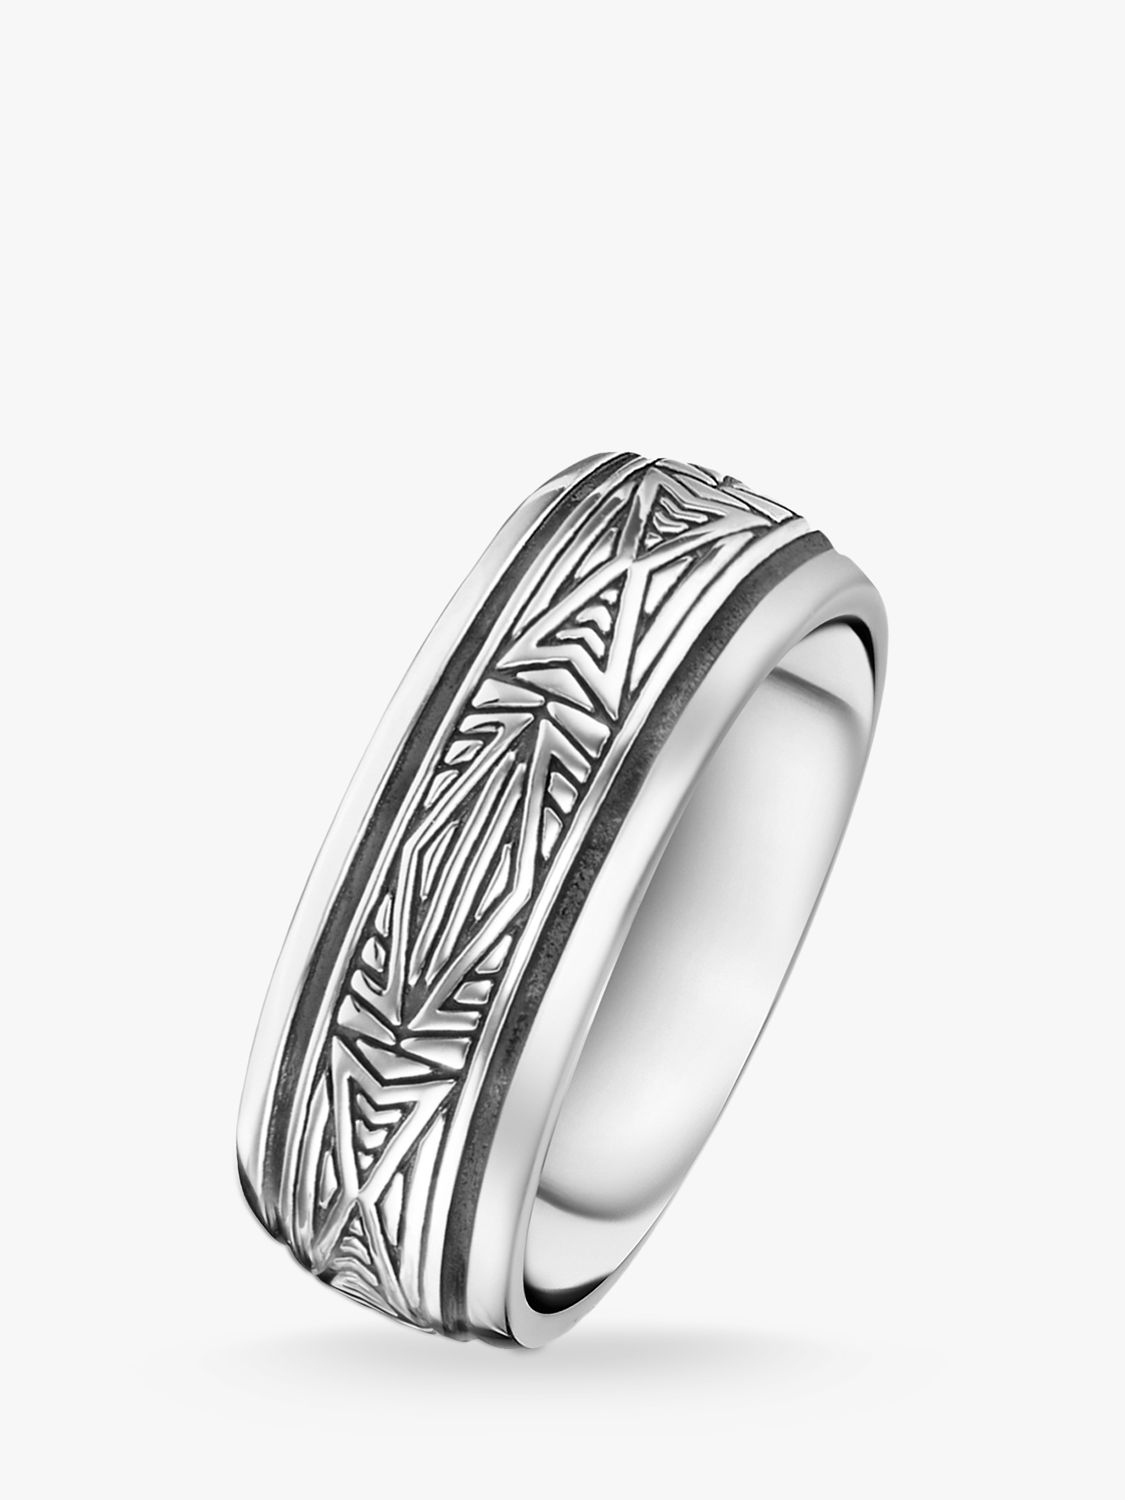 Buy THOMAS SABO Men's Rebel Textured Ring, Silver Online at johnlewis.com